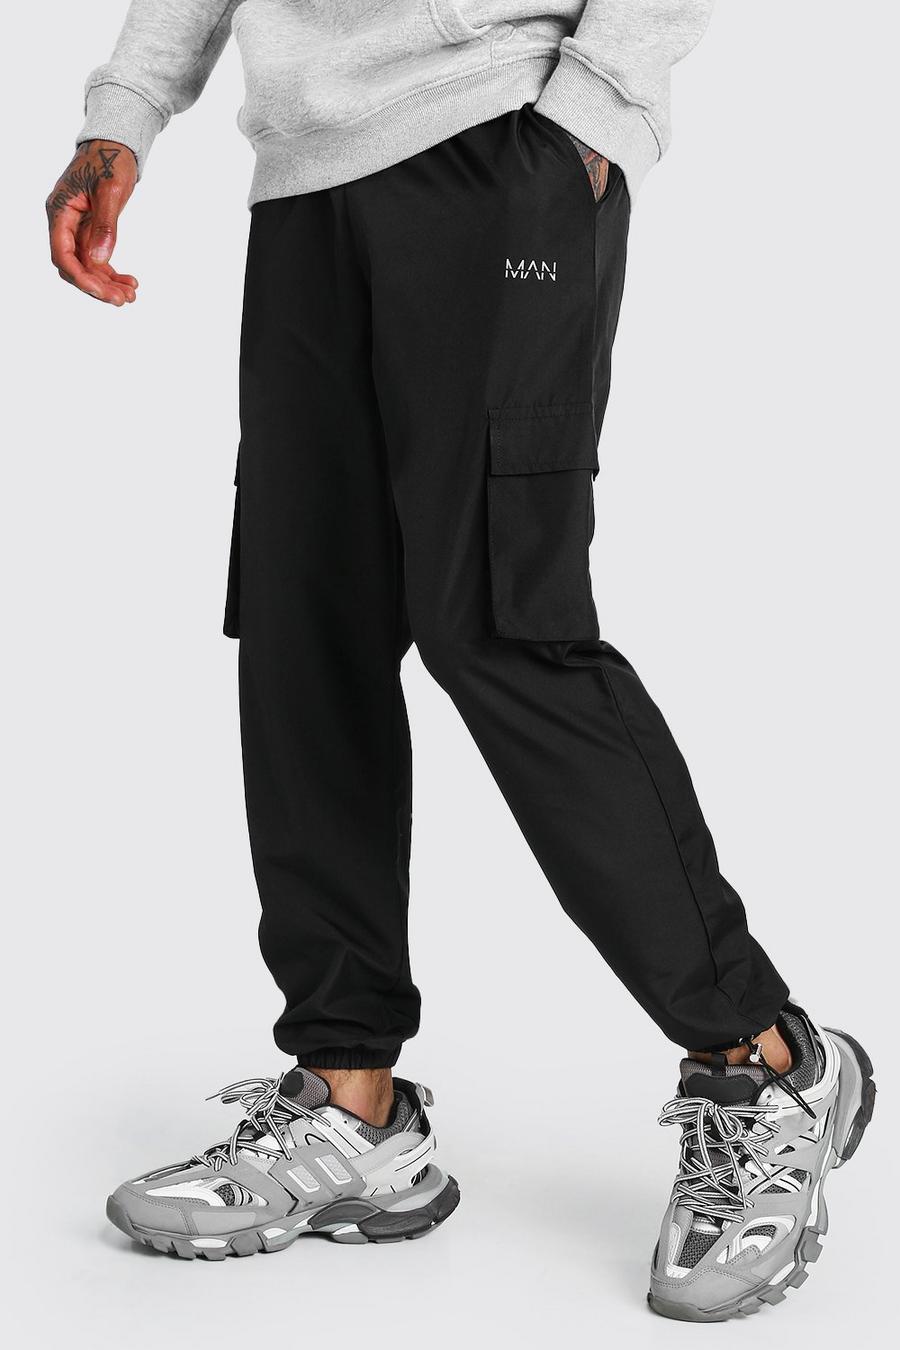 שחור מכנסי ריצה דגמ"ח עם כיתוב MAN ושרוך בקרסול image number 1